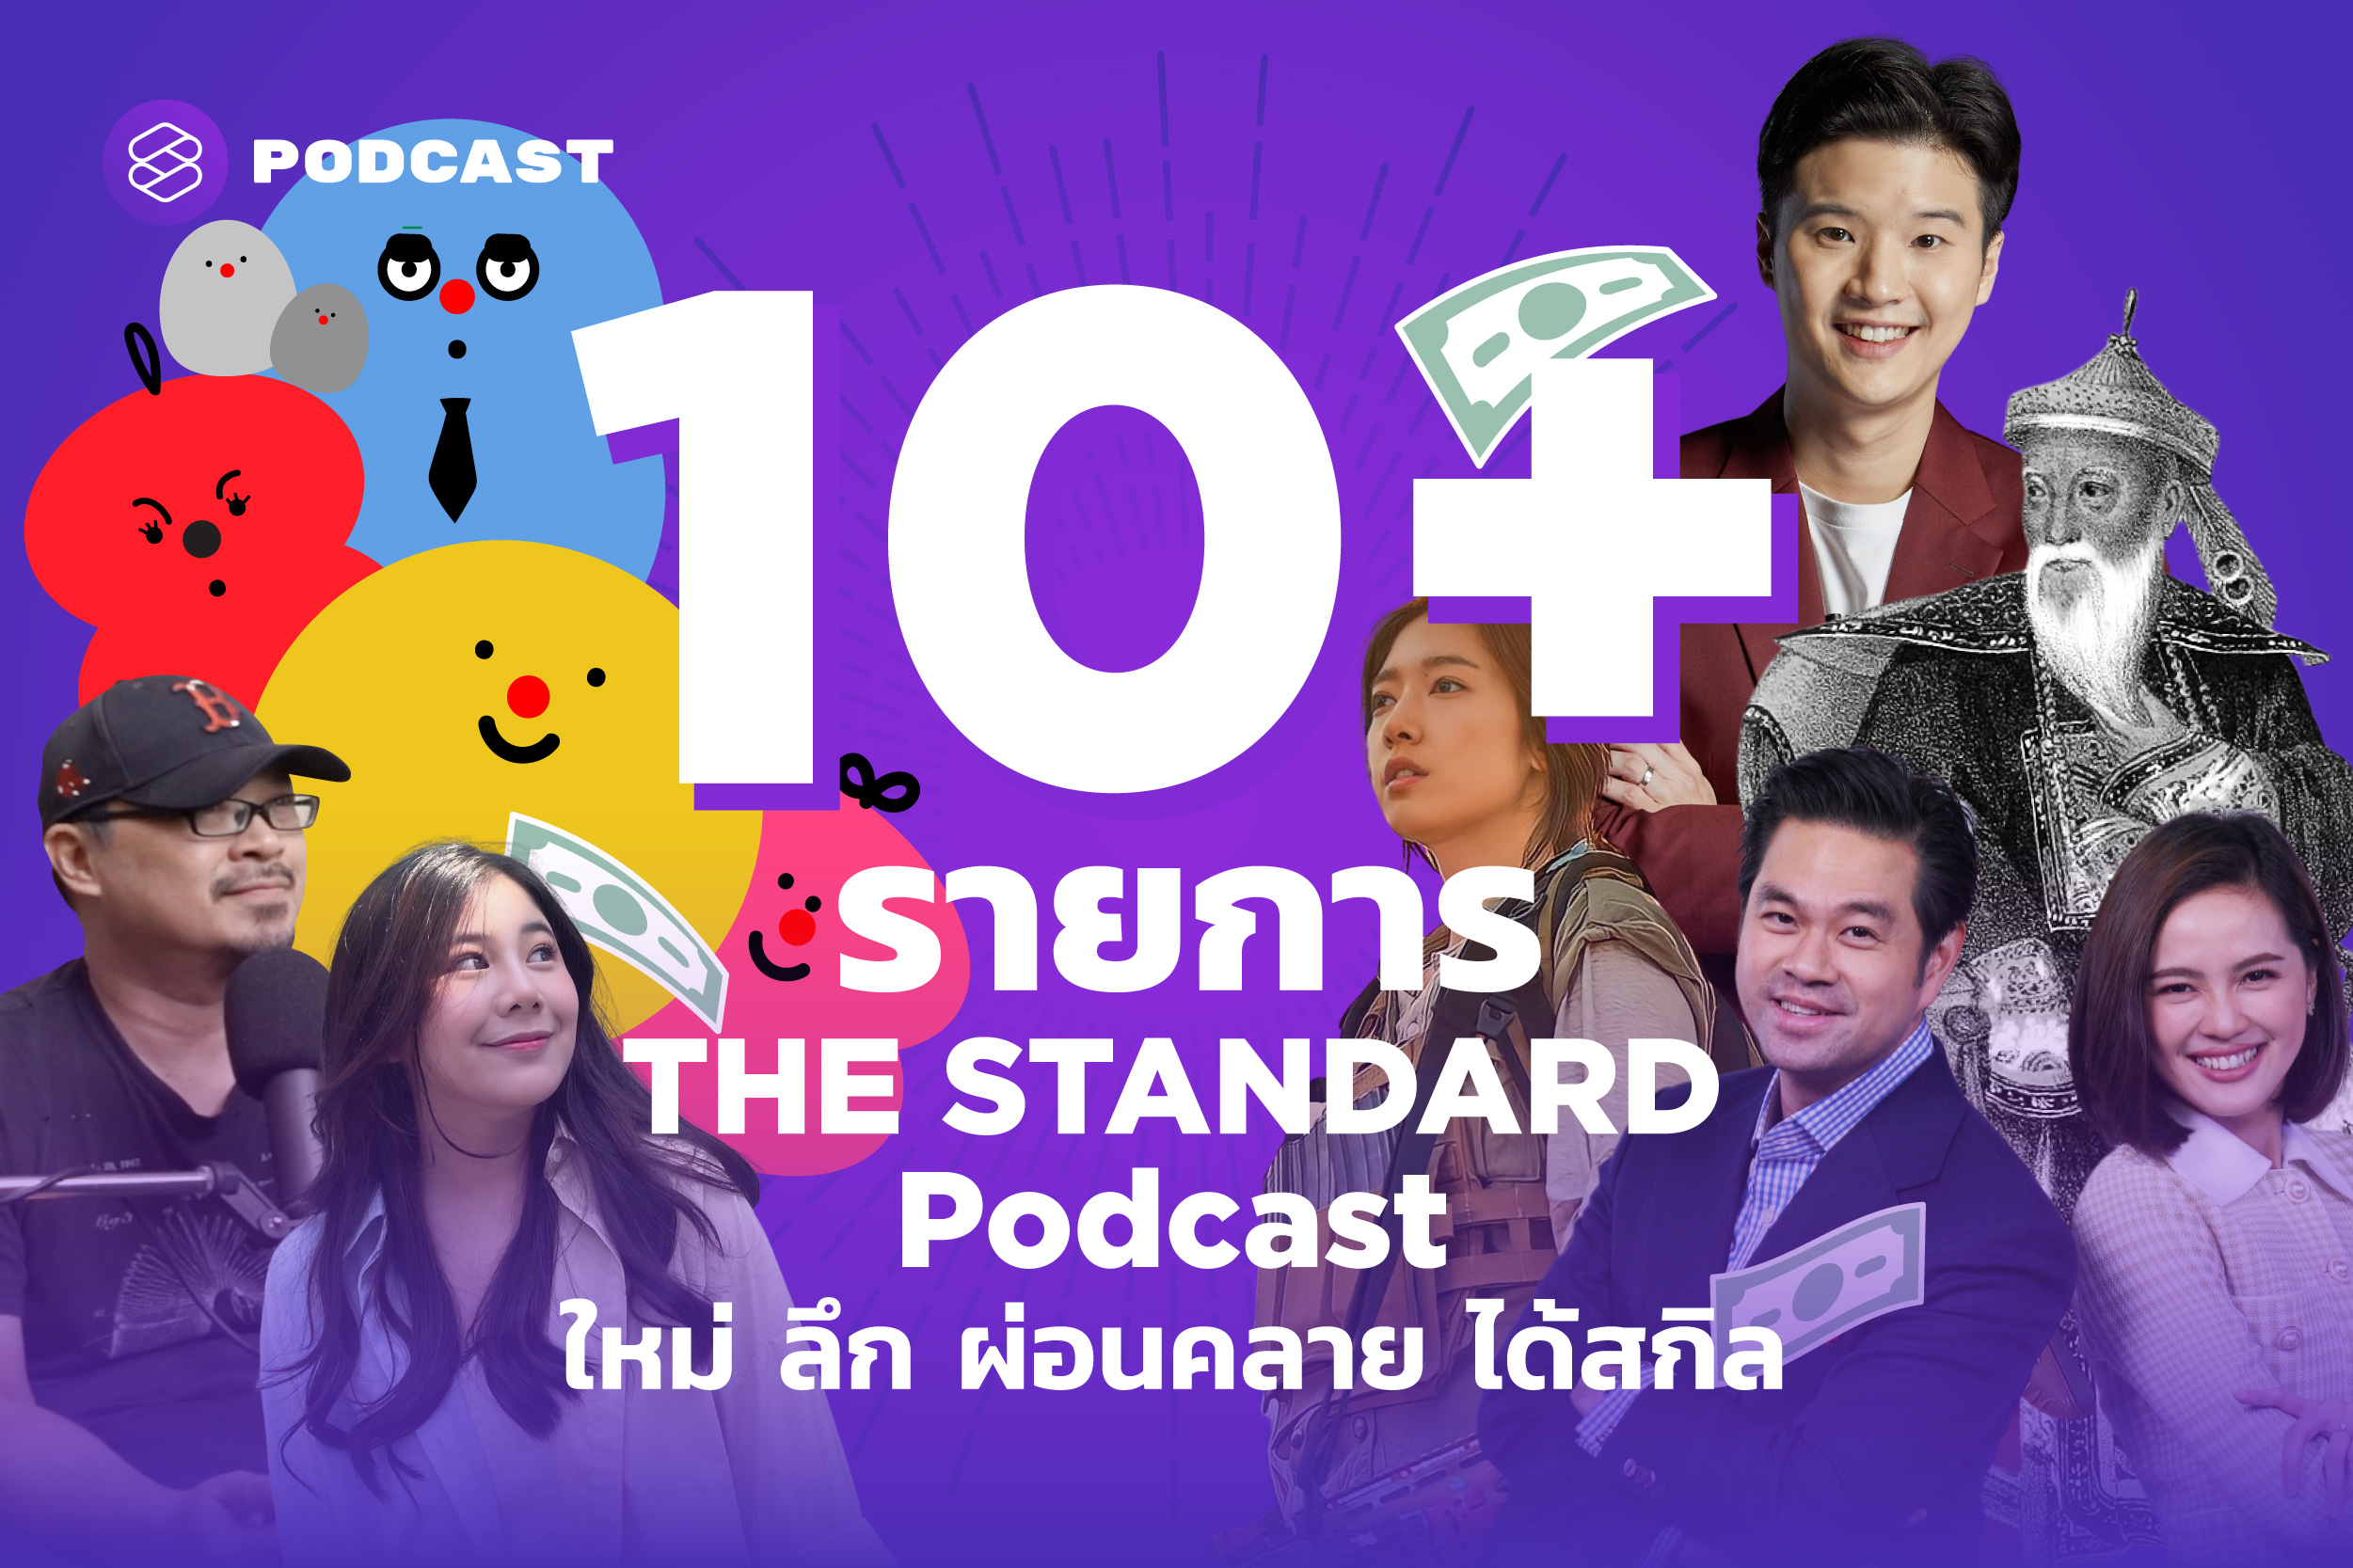 แนะนำ 10+ รายการ THE STANDARD Podcast ใหม่ ลึก ผ่อนคลาย ได้สกิล